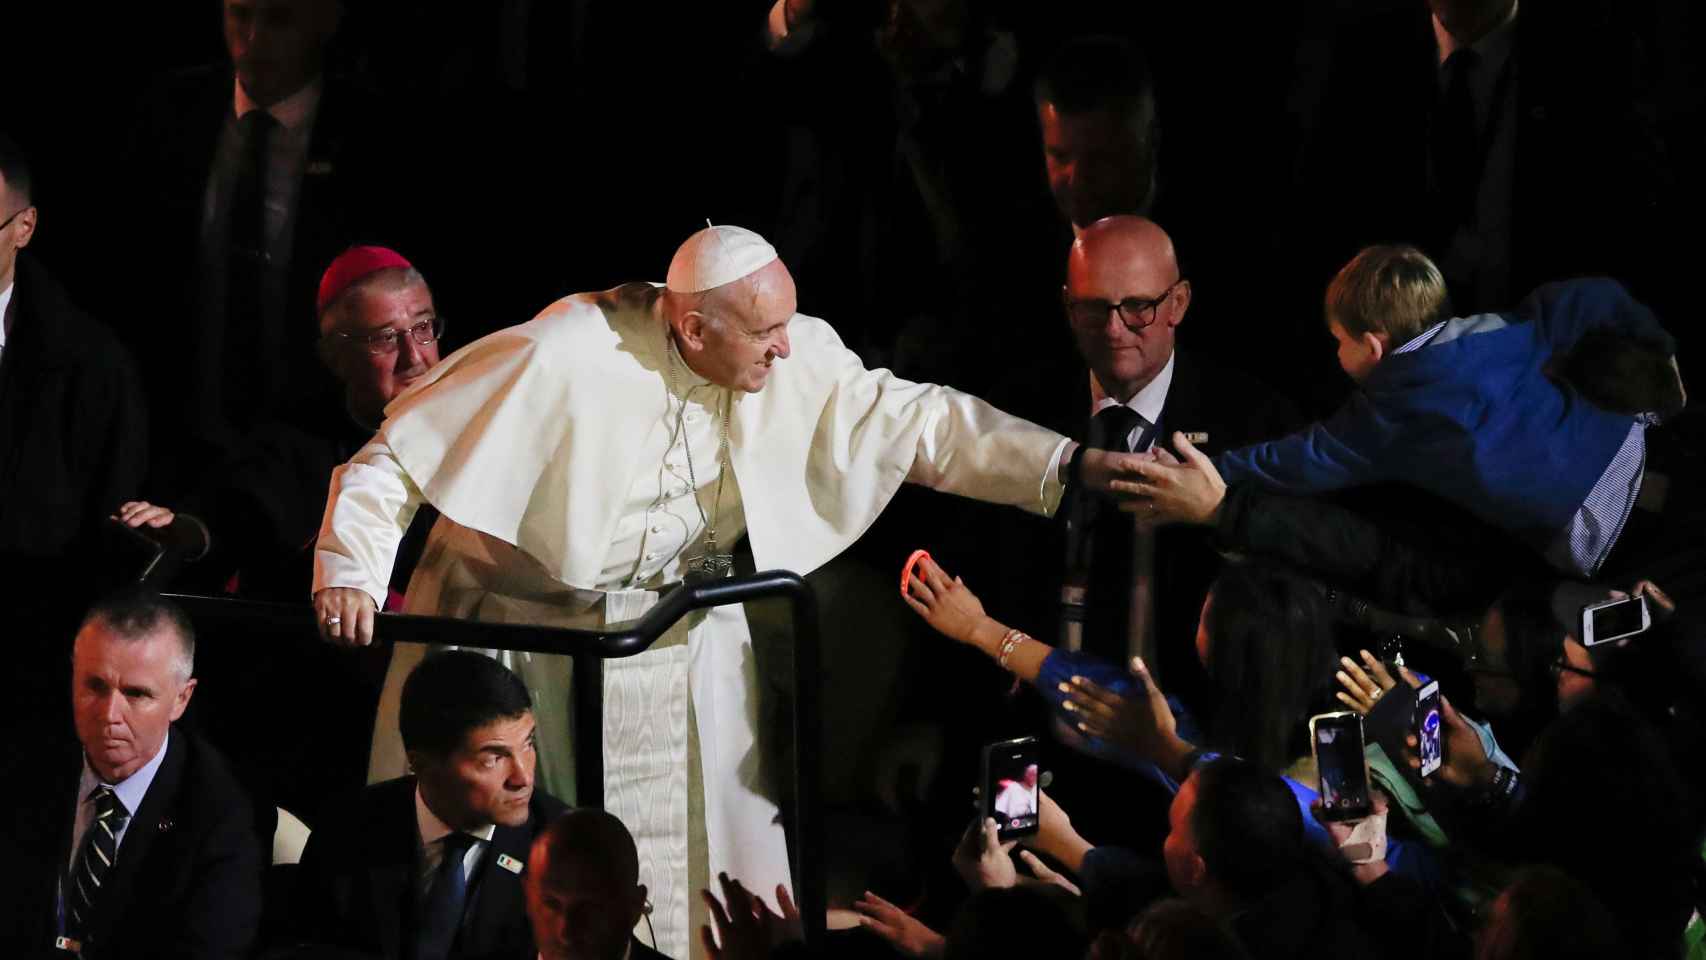 El papa Francisco saluda a un niño durante su vista a Irlanda